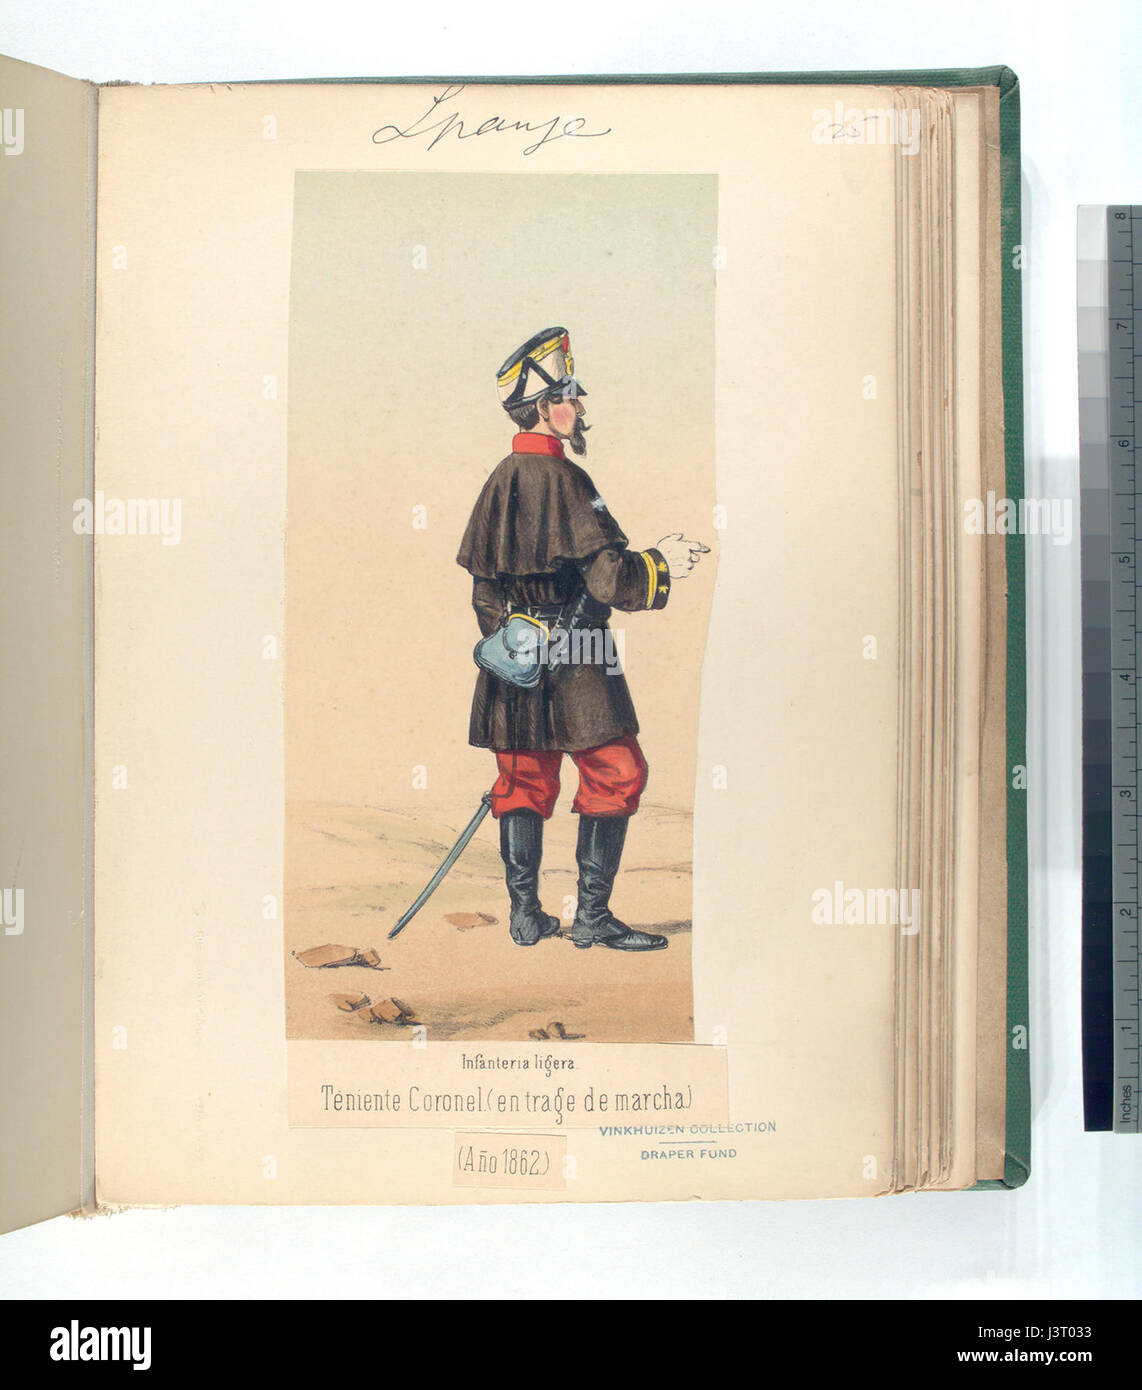 Infanteria ligera. Teniente Coronel (en trage de marcha). 1862 (NYPL b14896507 91378) Stock Photo